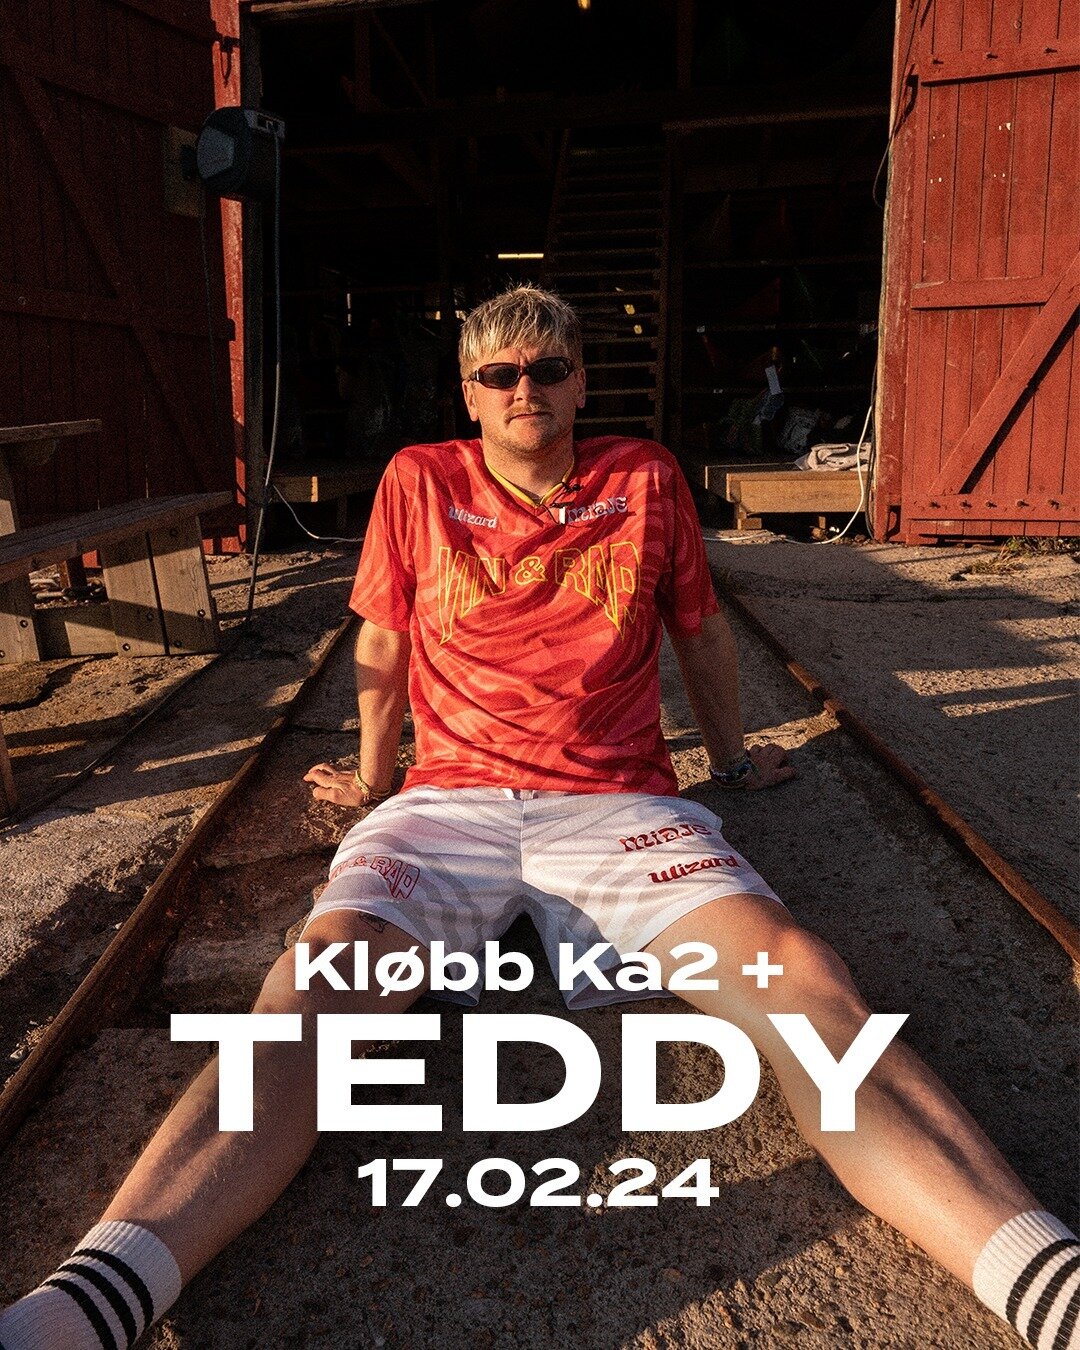 KL&Oslash;BB KA2 annonserar TEDDY!

Ein mann som for dei fleste er nok mest kjend som skikkelsen bak DJ-spakane under alle Kjartan Lauritzen konsert, og ikkje minst storebroren til sj&oslash;lve Kjartan. Det ikkje alle veit er at TEDDY ikkje berre sp